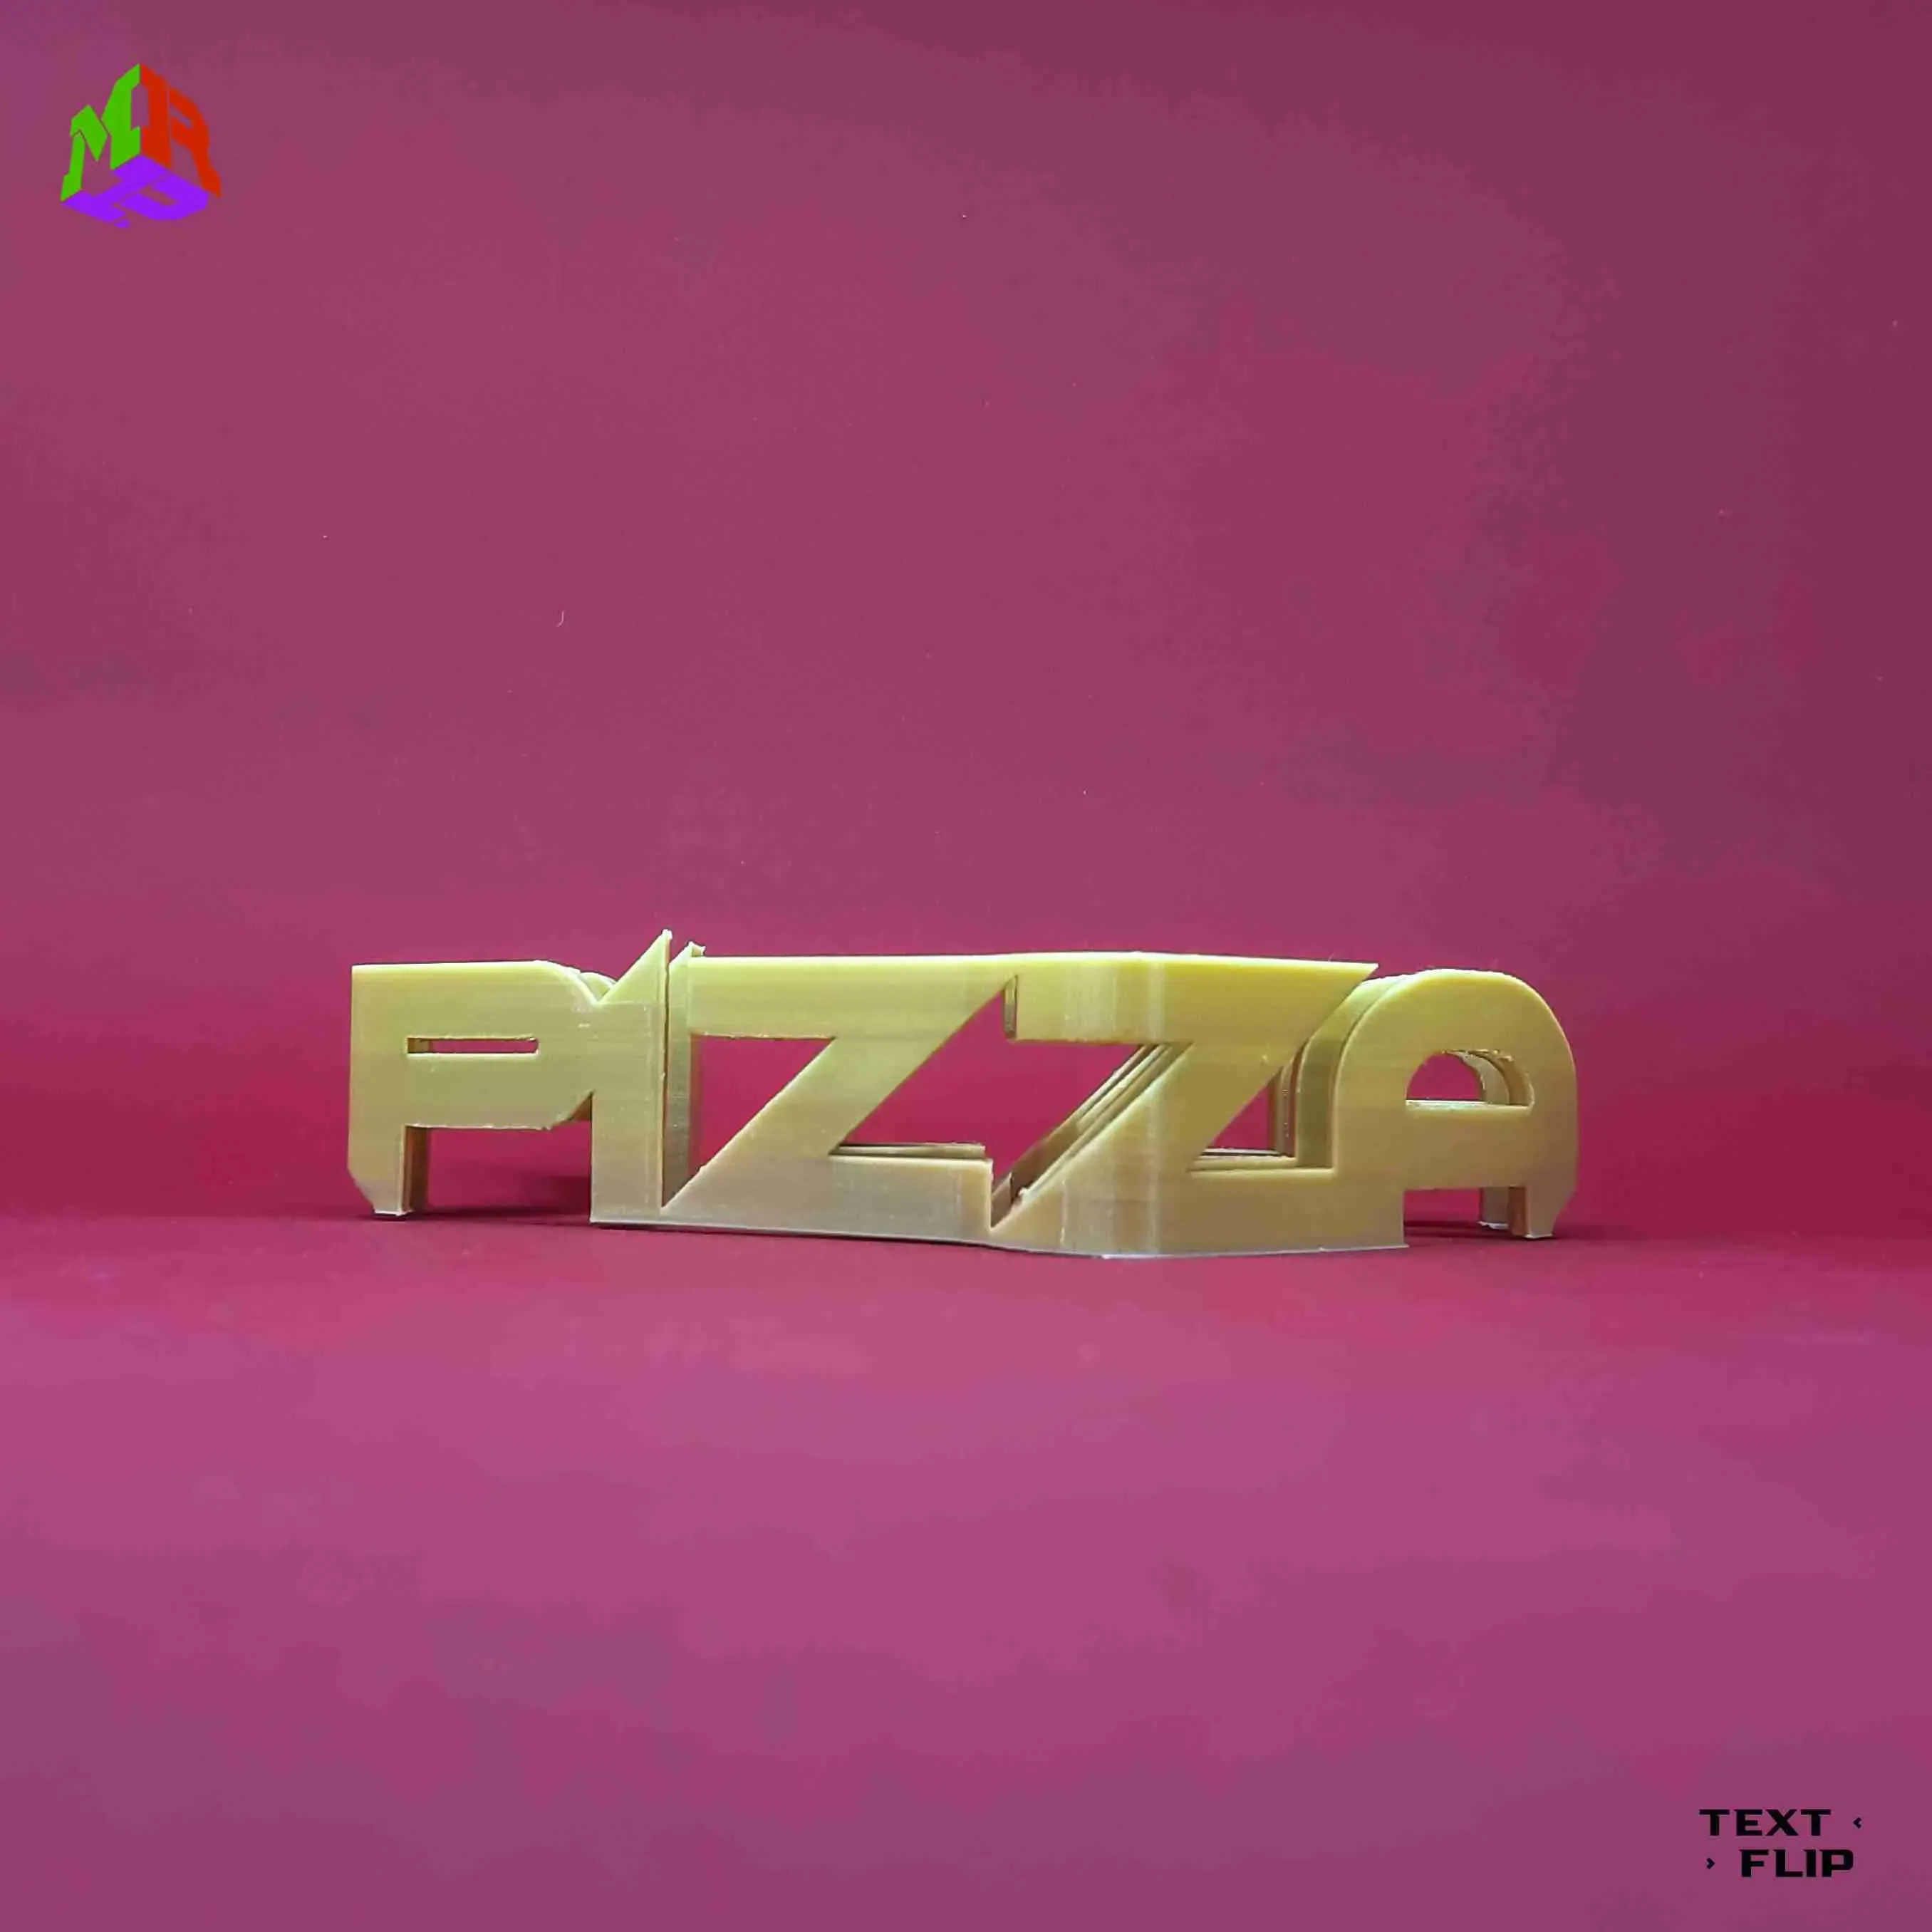 Text Flip - Pizza